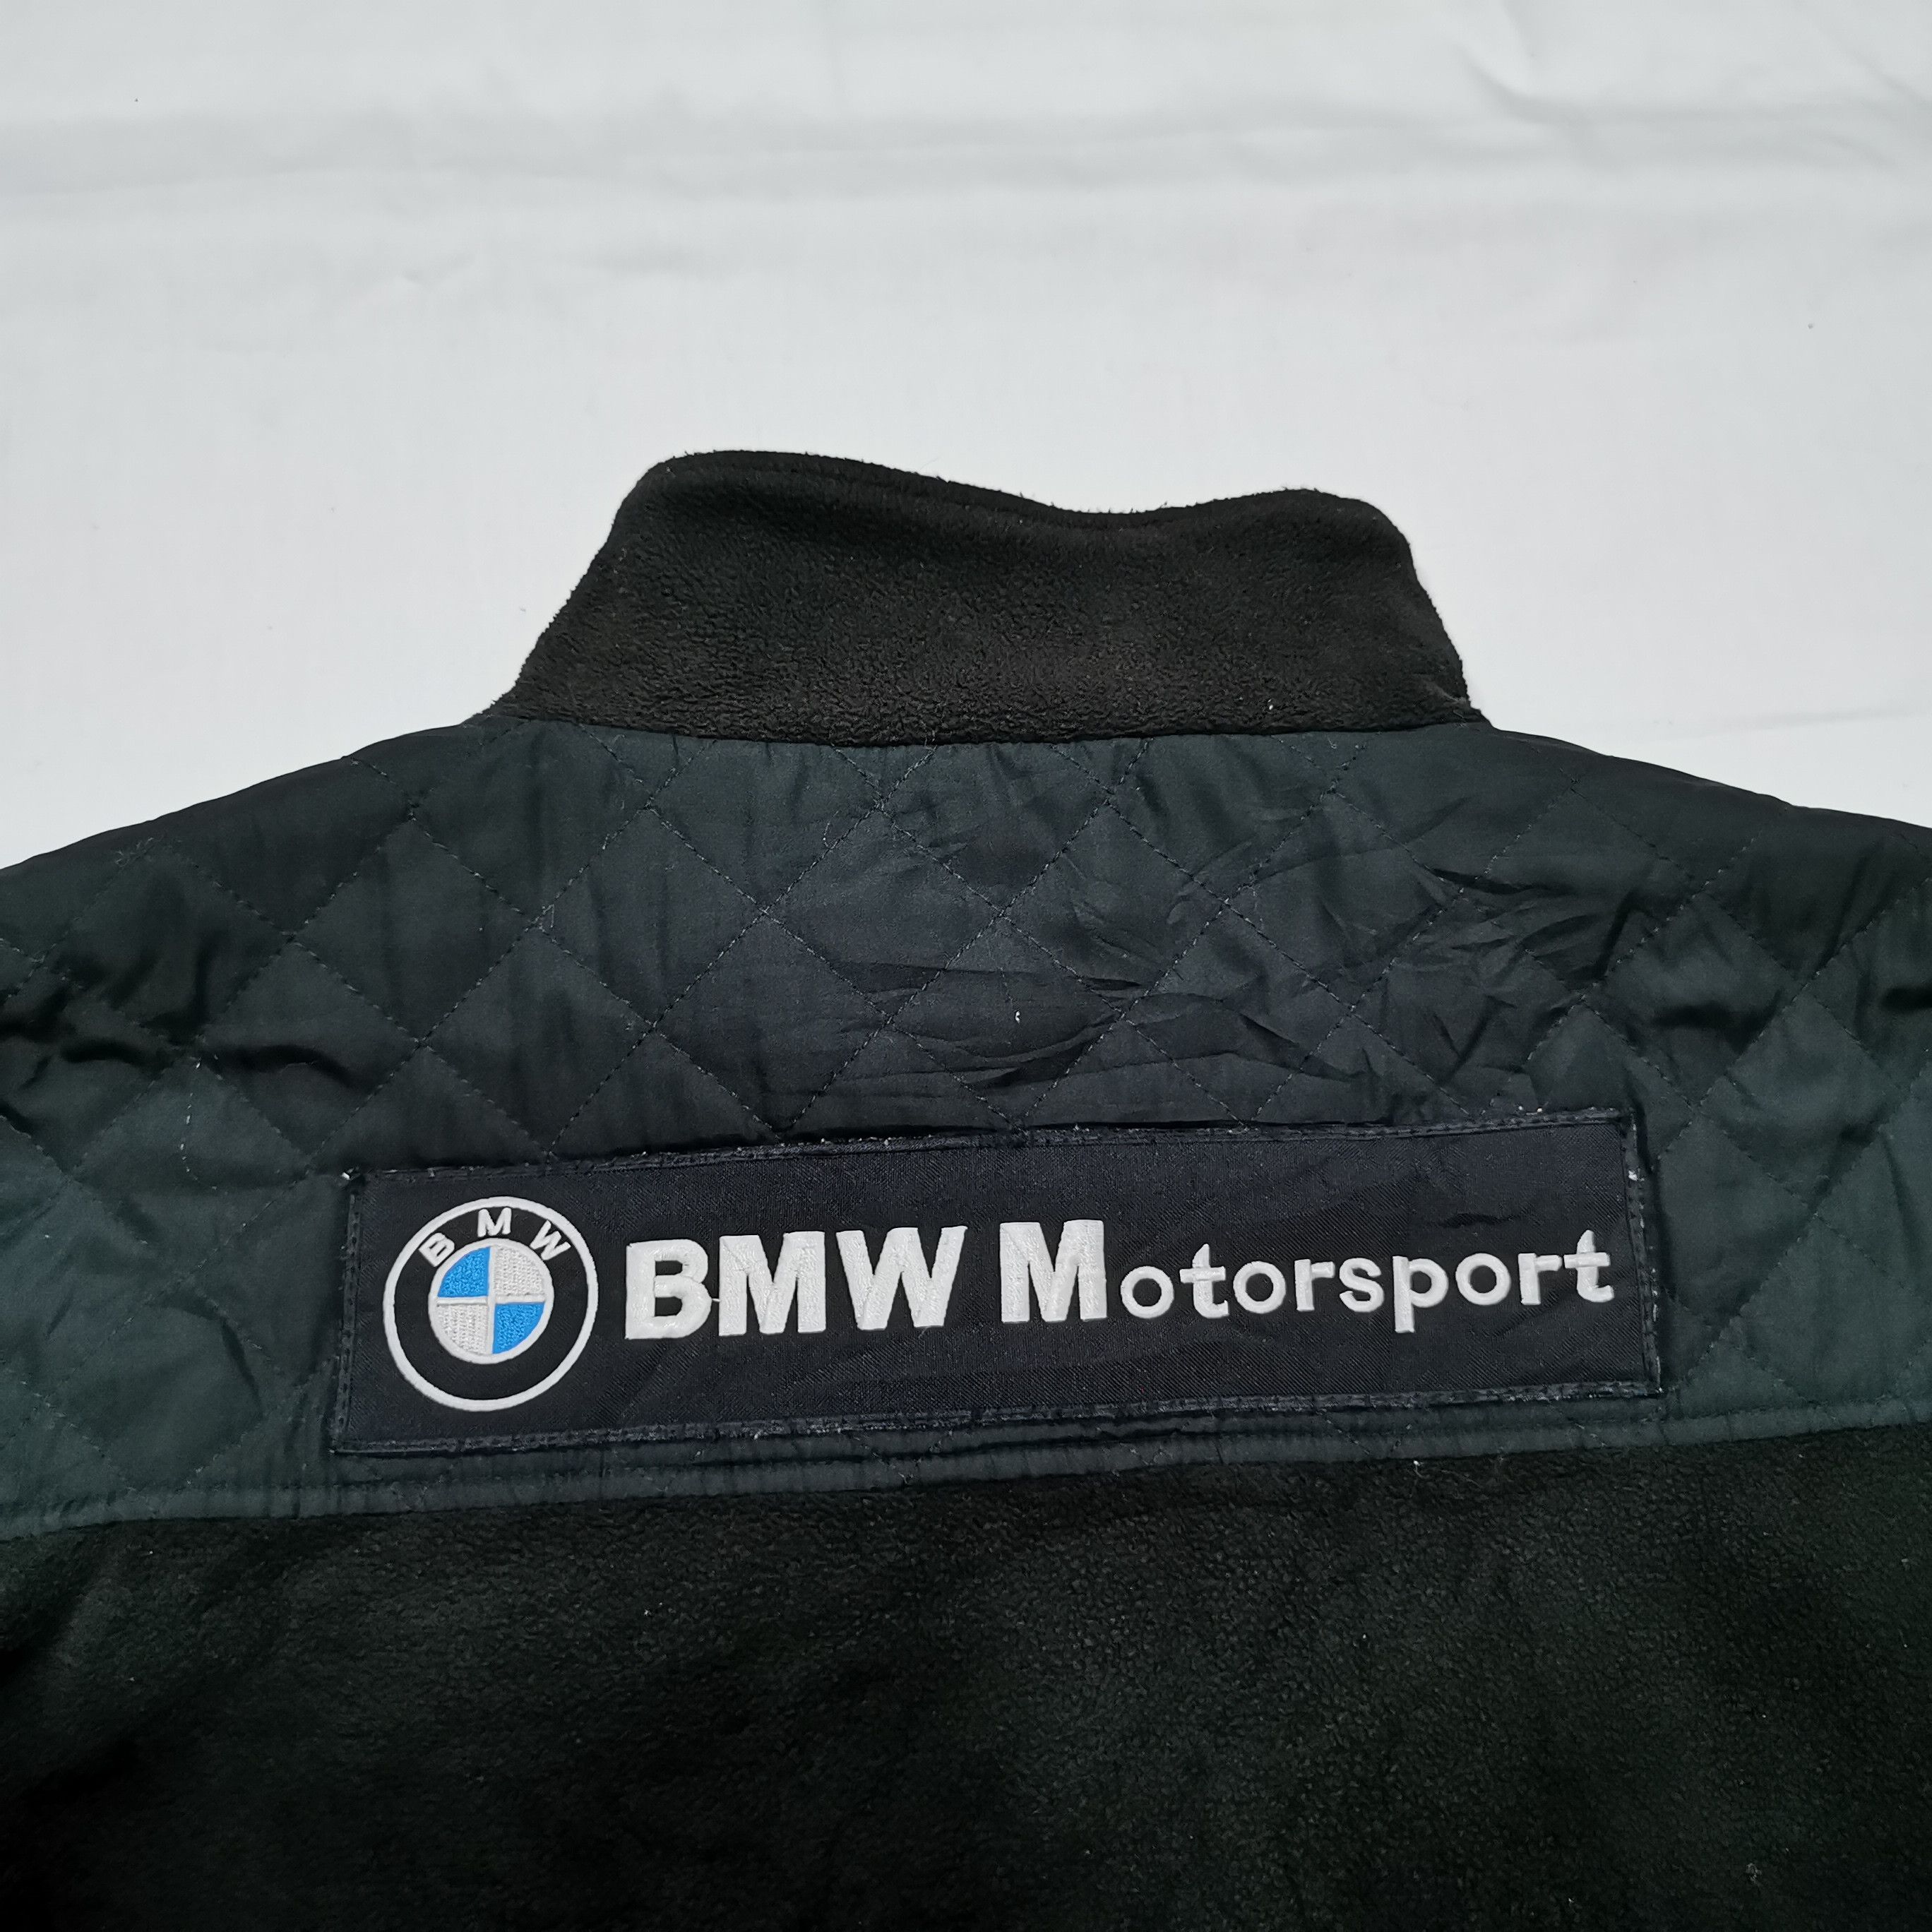 Vintage BMW MPower Motorsport RBS F1 Team Jacket - 2